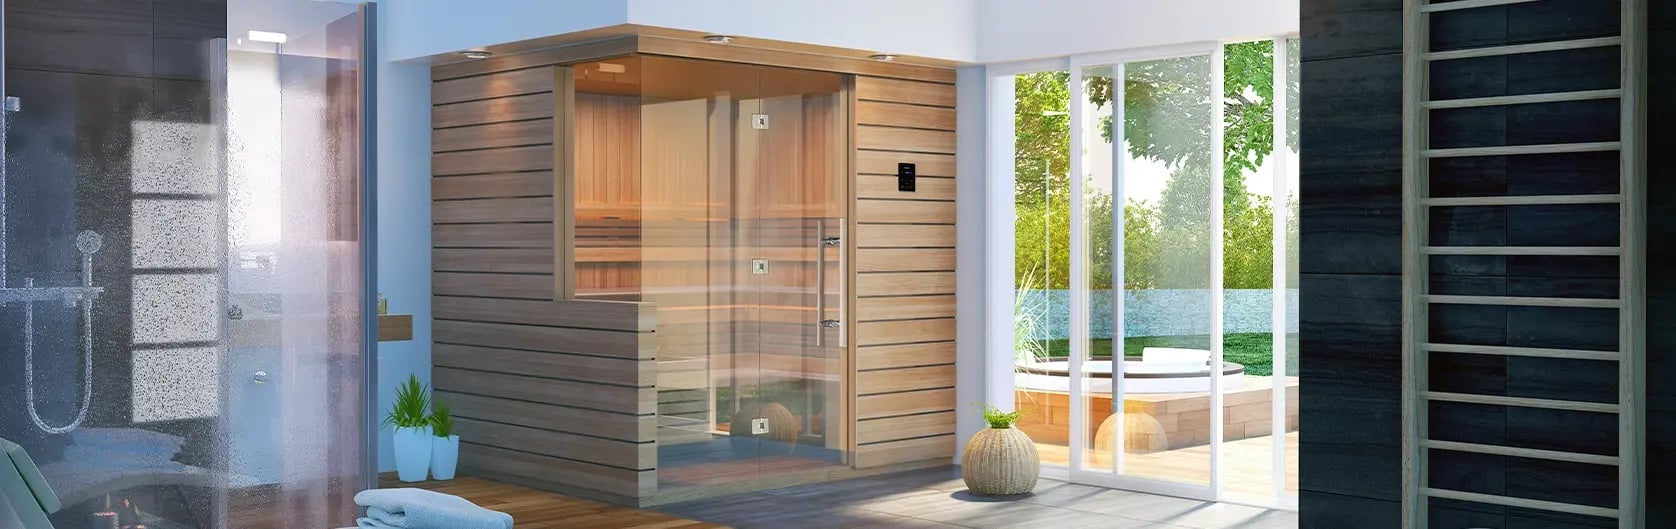 Designer traditional indoor sauna